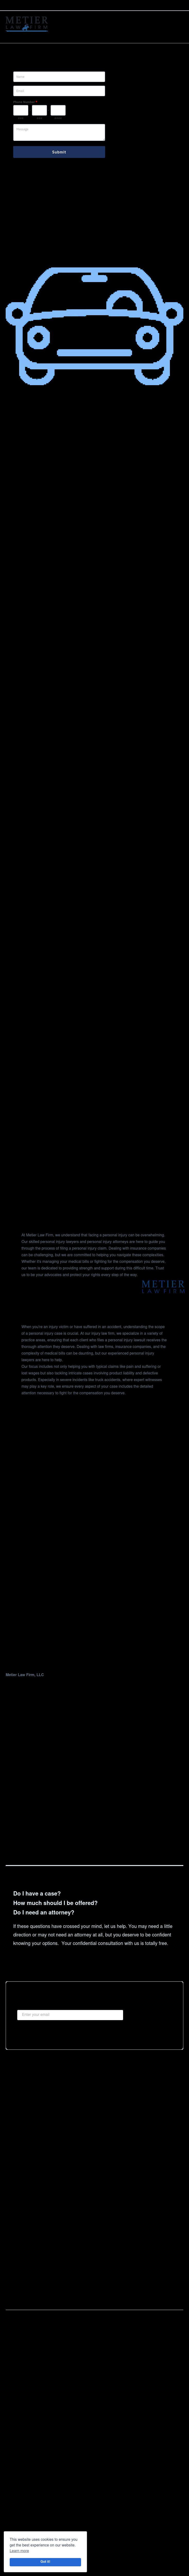 Metier Law Firm - Cheyenne WY Lawyers